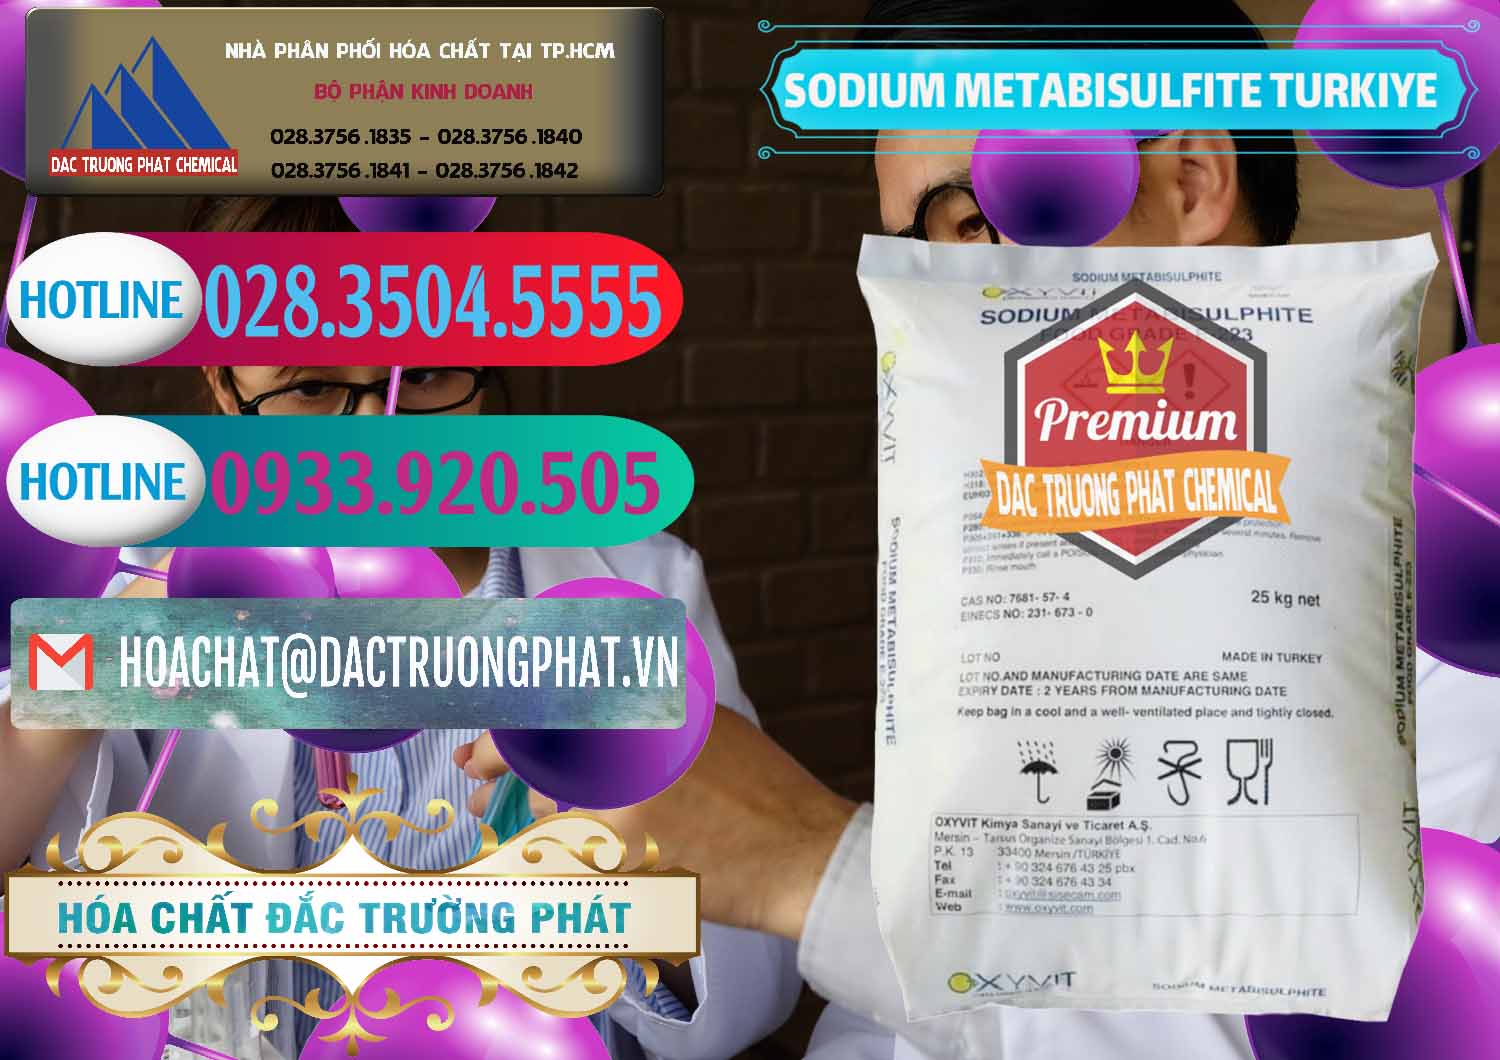 Cty chuyên cung ứng và bán Sodium Metabisulfite - NA2S2O5 Food Grade E-223 Thổ Nhĩ Kỳ Turkey - 0413 - Công ty chuyên cung ứng ( phân phối ) hóa chất tại TP.HCM - truongphat.vn